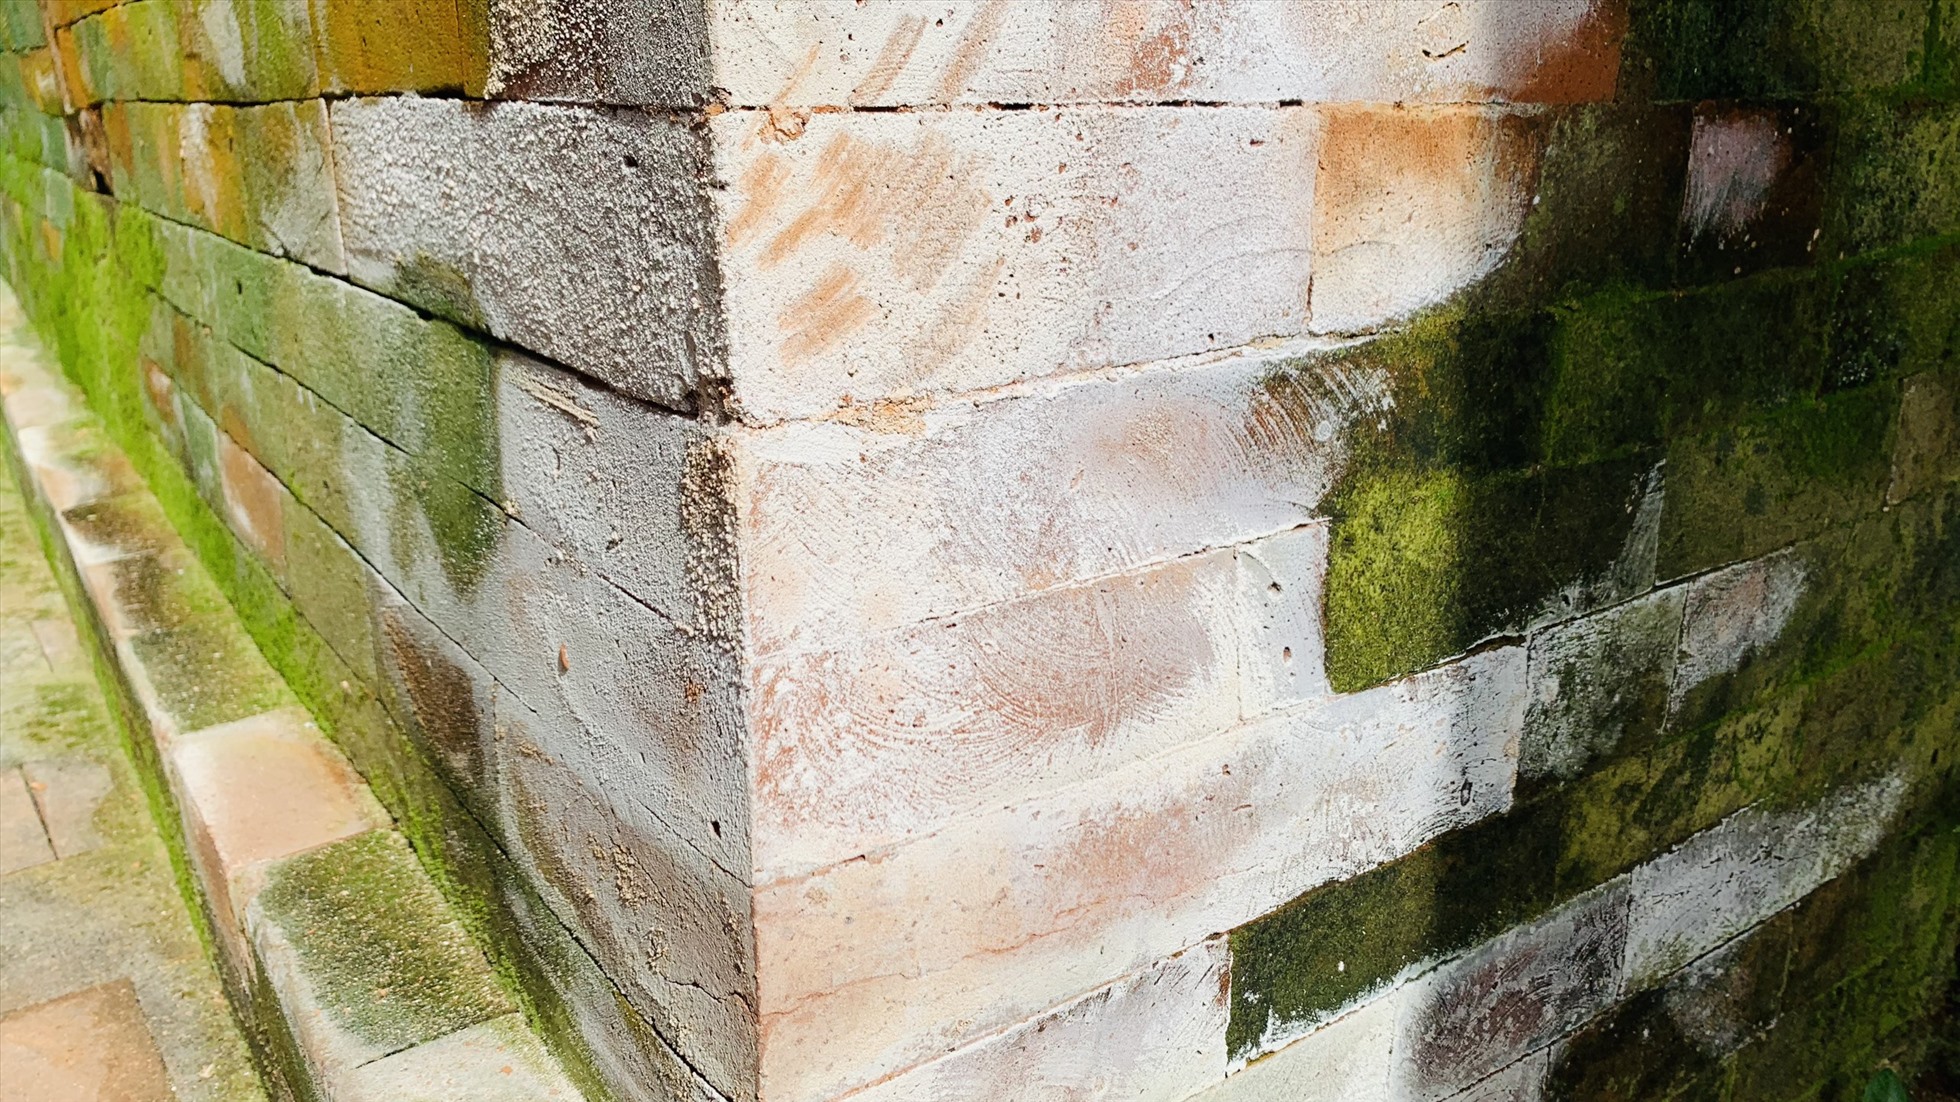 Hiện tượng muối hóa, rêu phong phủ trên bề mặt gạch mới trùng tu ở di tích tháp Chăm Khương Mỹ. Ảnh Hoàng Bin